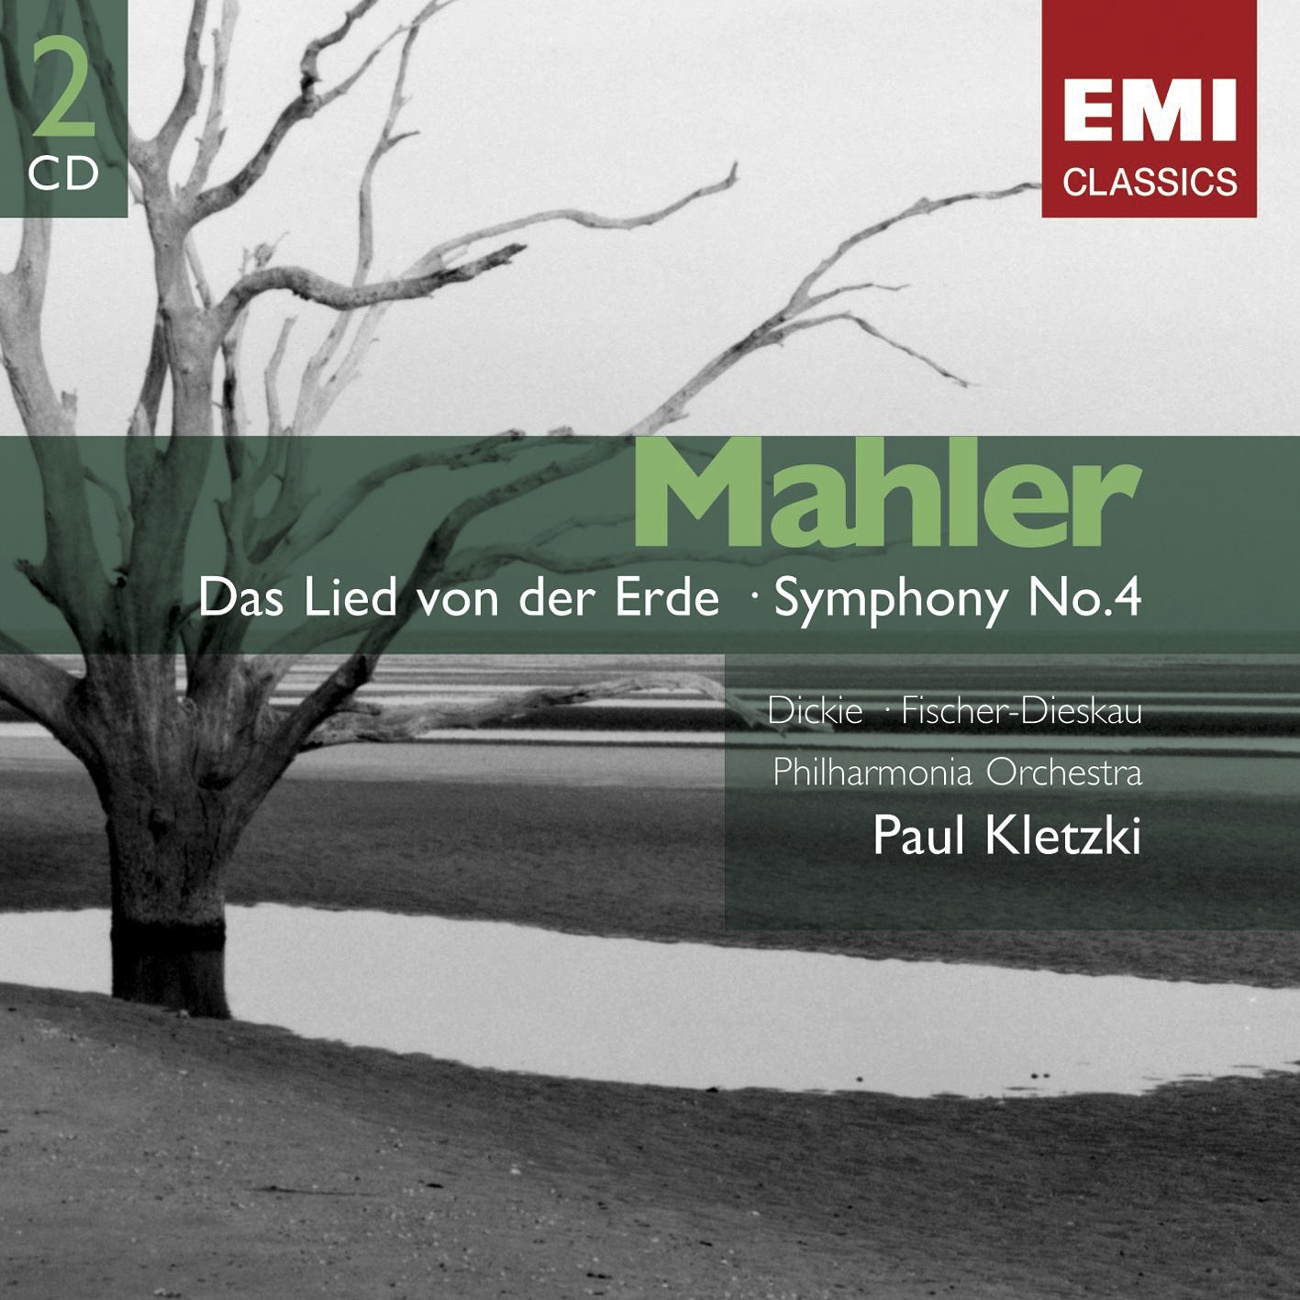 Mahler: Das Lied von der Erde & Symphony No.4